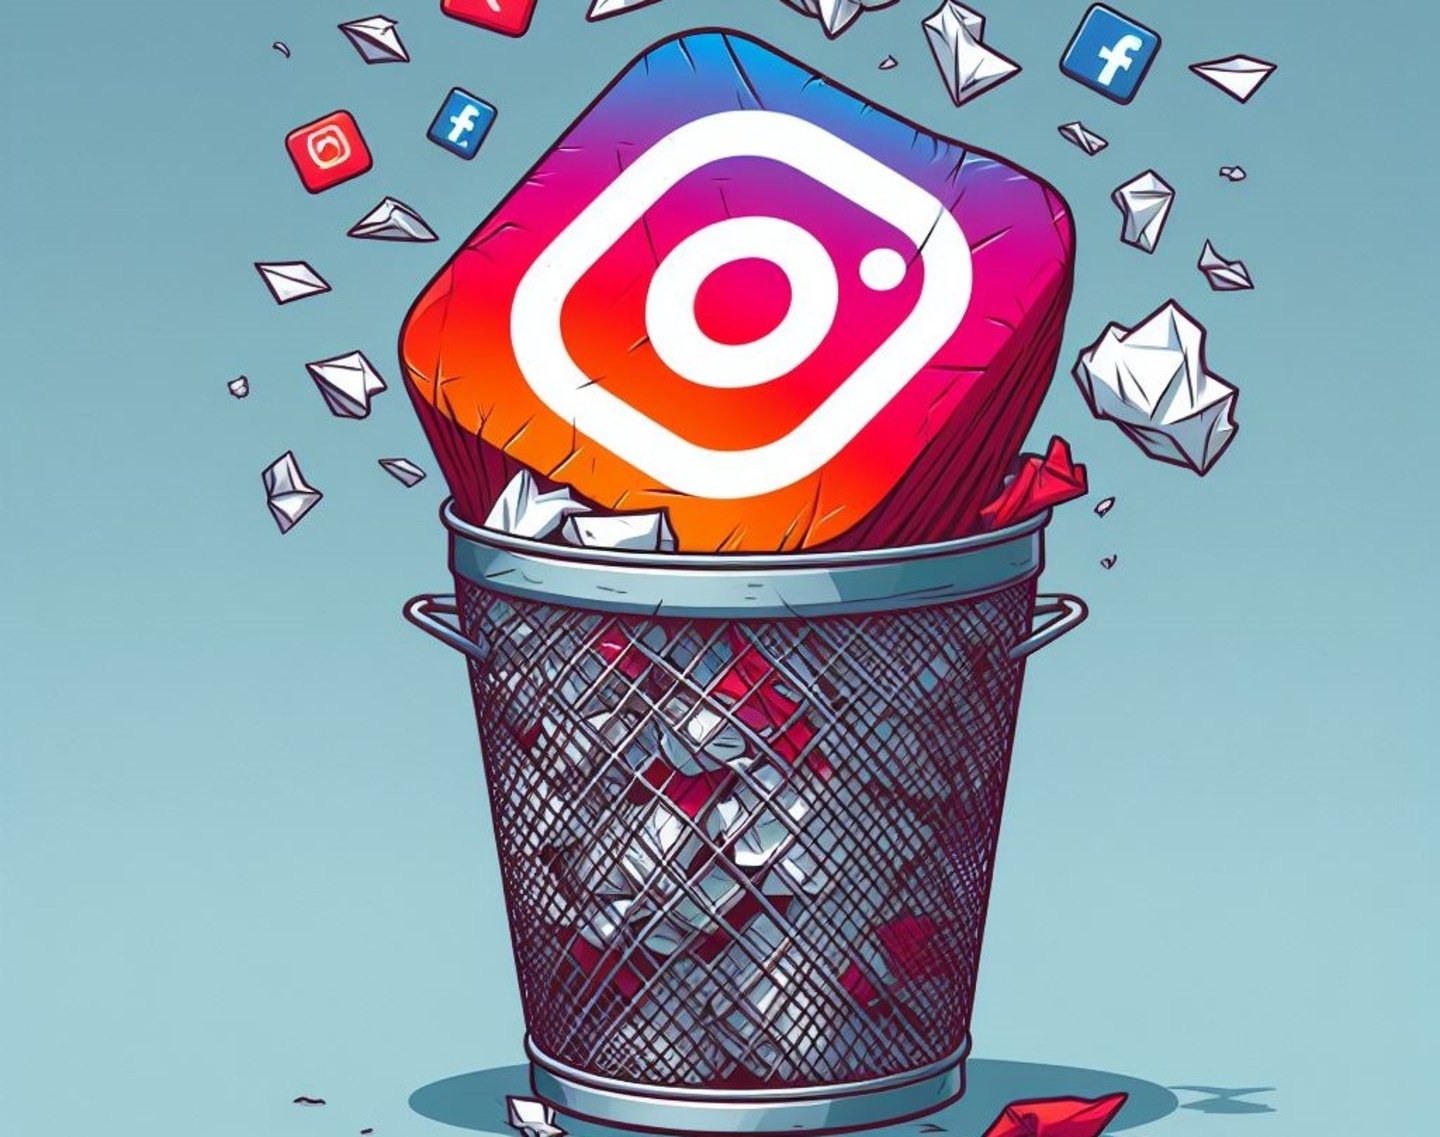 Logotipo de Instagram tirado a la basura